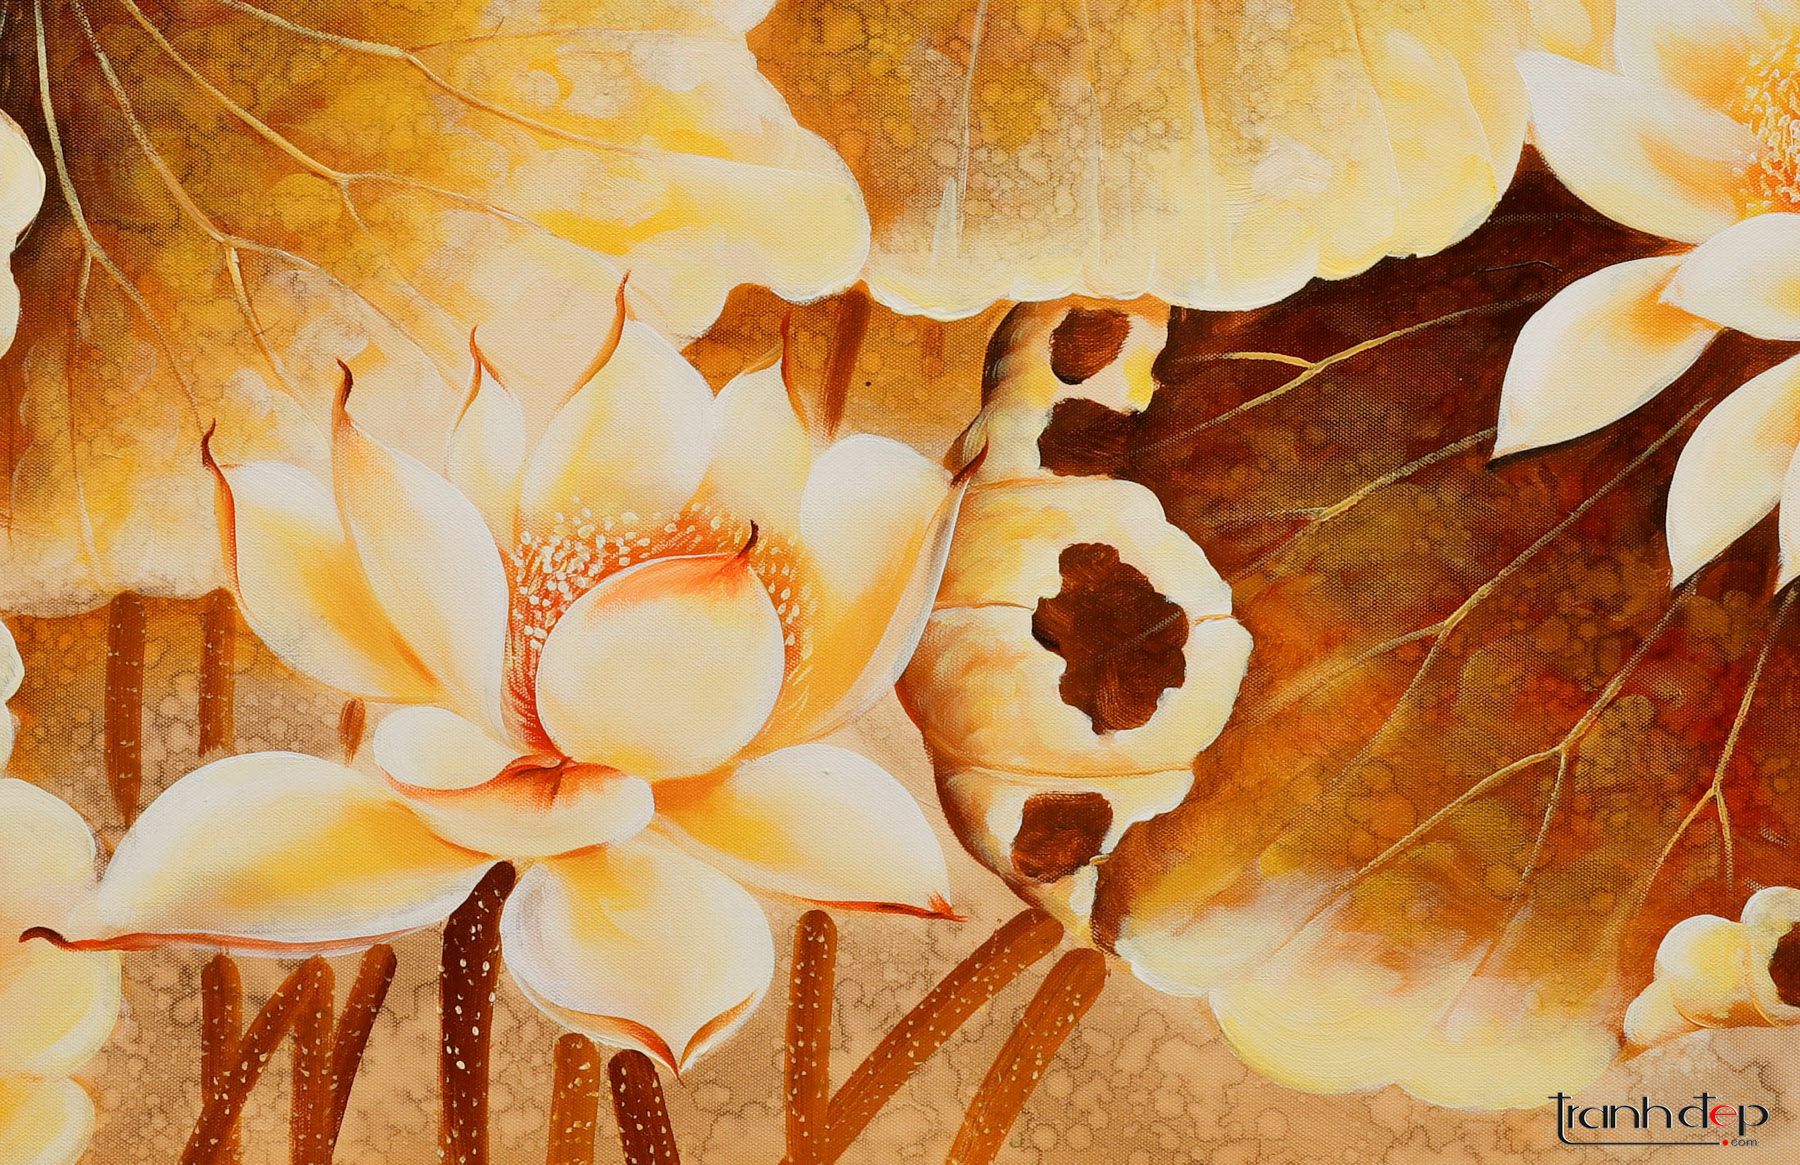 Tranh sơn dầu hoa sen vàng là thể hiện sự lãng mạn và tài năng nghệ thuật của người vẽ. Với những chi tiết tinh tế và màu sắc đẹp mắt, các bức tranh về hoa sen vàng là một món quà tuyệt vời để tặng cho những người yêu mến nghệ thuật và văn hóa Việt Nam.